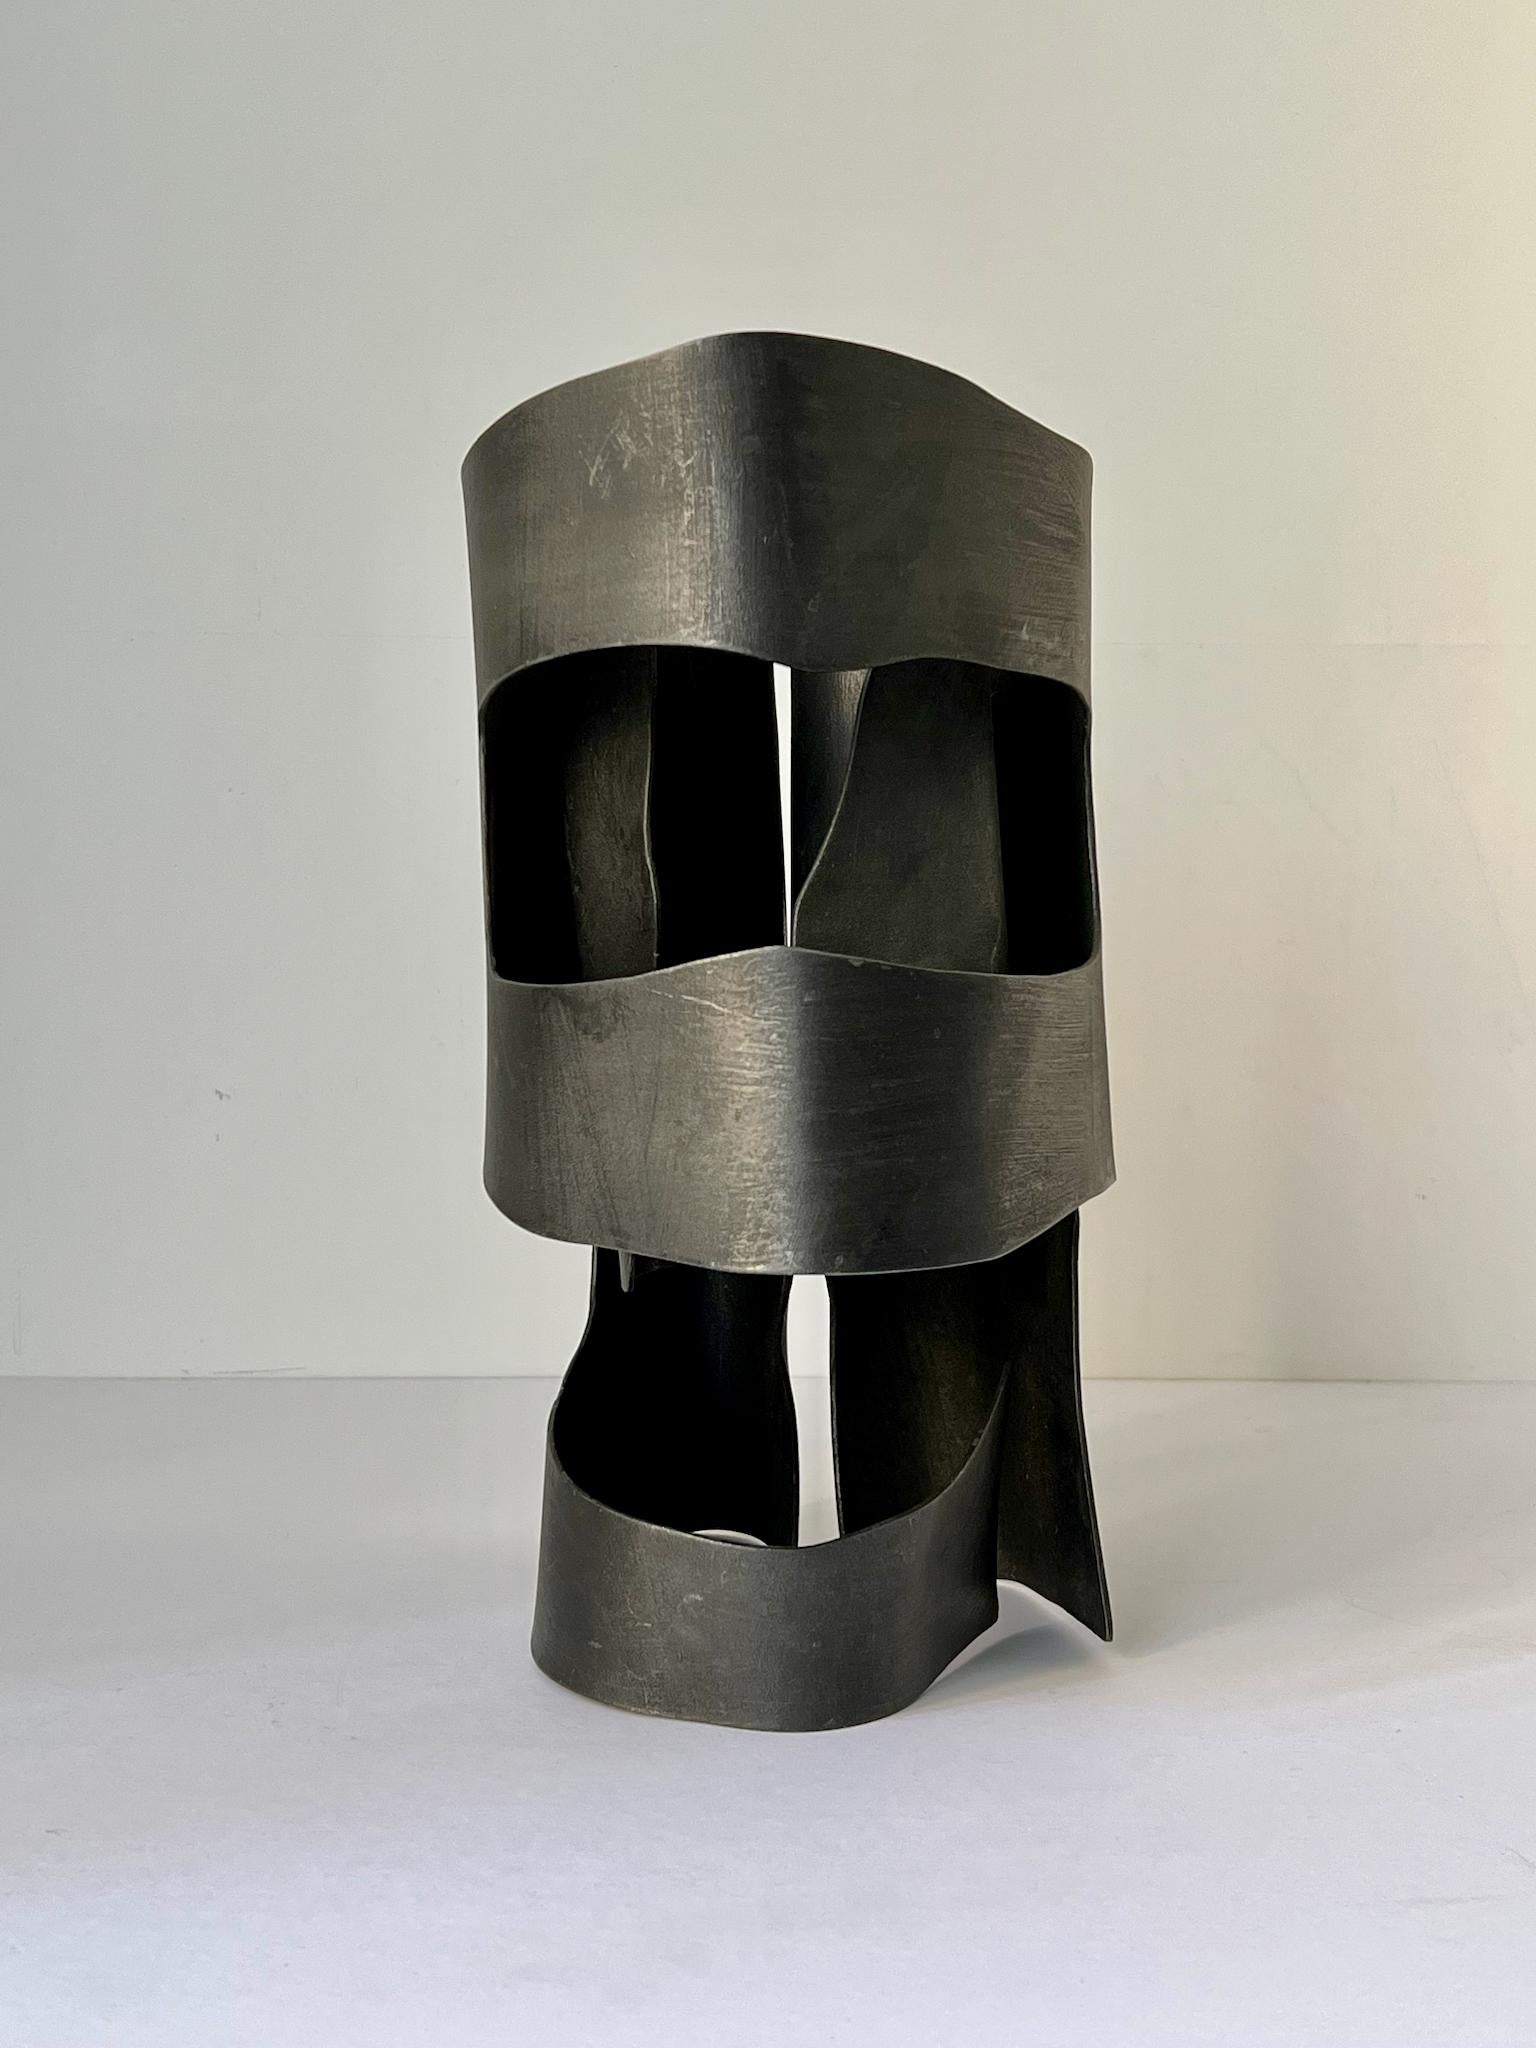 *Bitte fragen Sie uns nach der Verfügbarkeit dieses Artikels

Abstrakte Stahlskulptur in Form eines Helms; aus dem Nachlass der Künstlerin June Barrington-Ward (1922-2002) und ihr zugeschrieben. England 1970er Jahre. Nicht signiert.

Guter